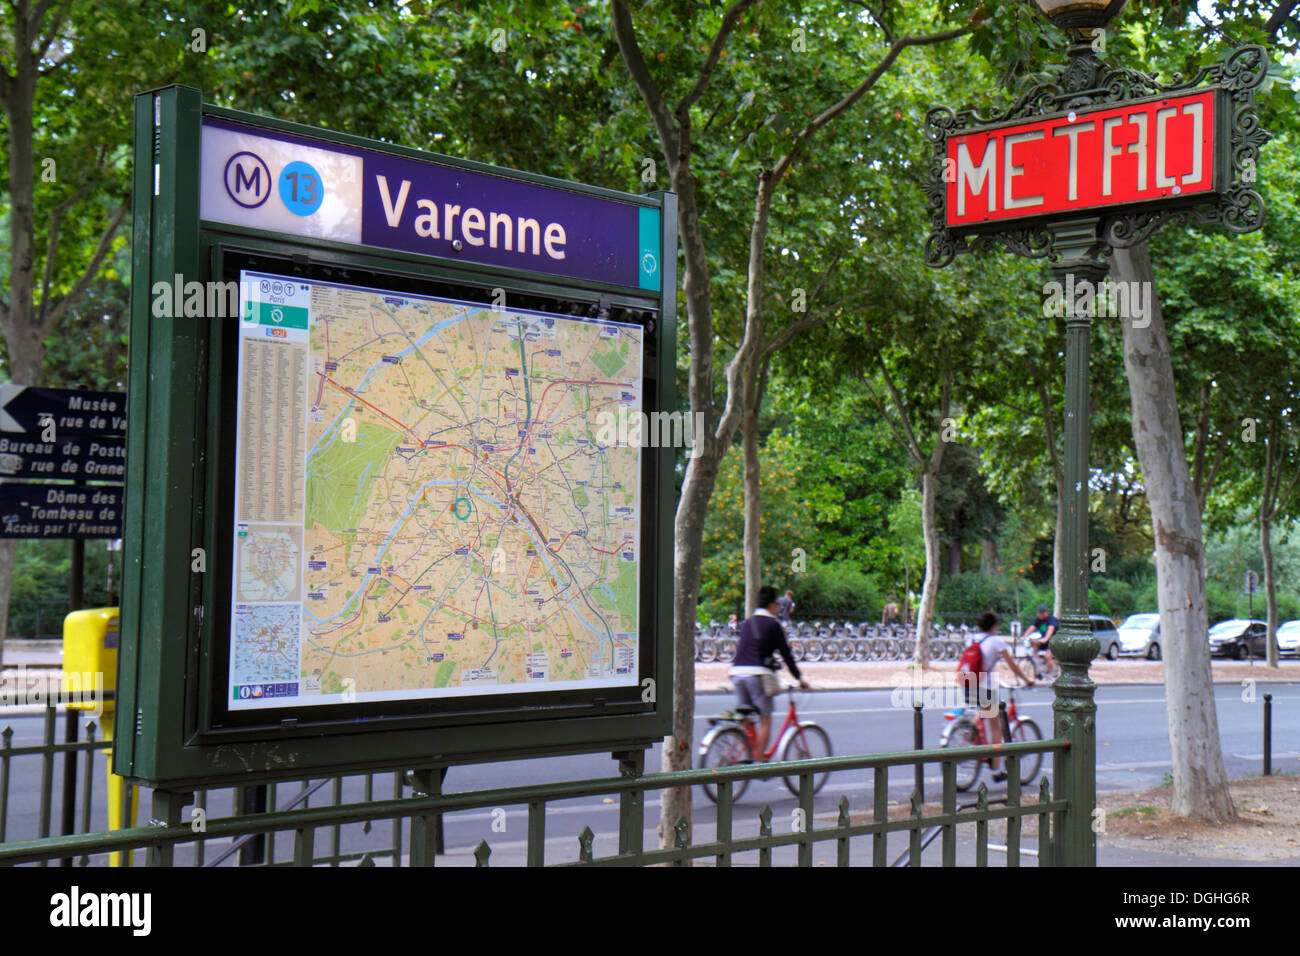 Paris France,7th arrondissement,Boulevard des Invalides,Varenne Metro Station Line 13,subway,train,entrance,sign,map,France130818097 Stock Photo